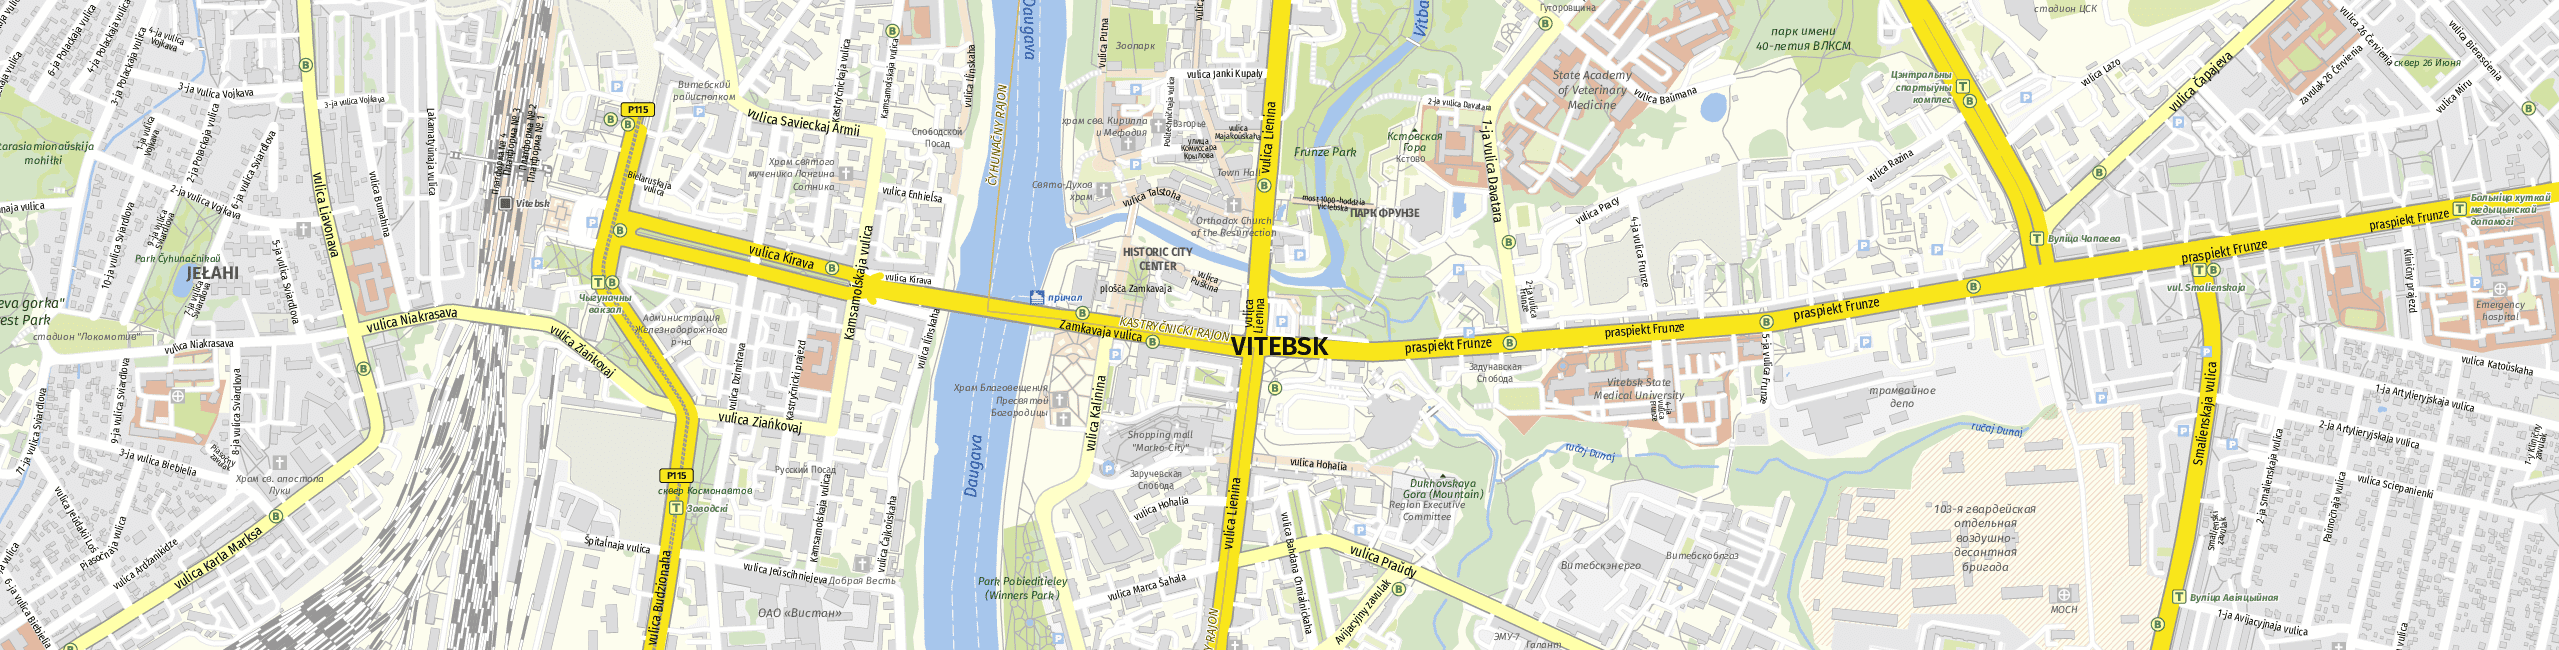 Stadtplan Vitebsk zum Downloaden.